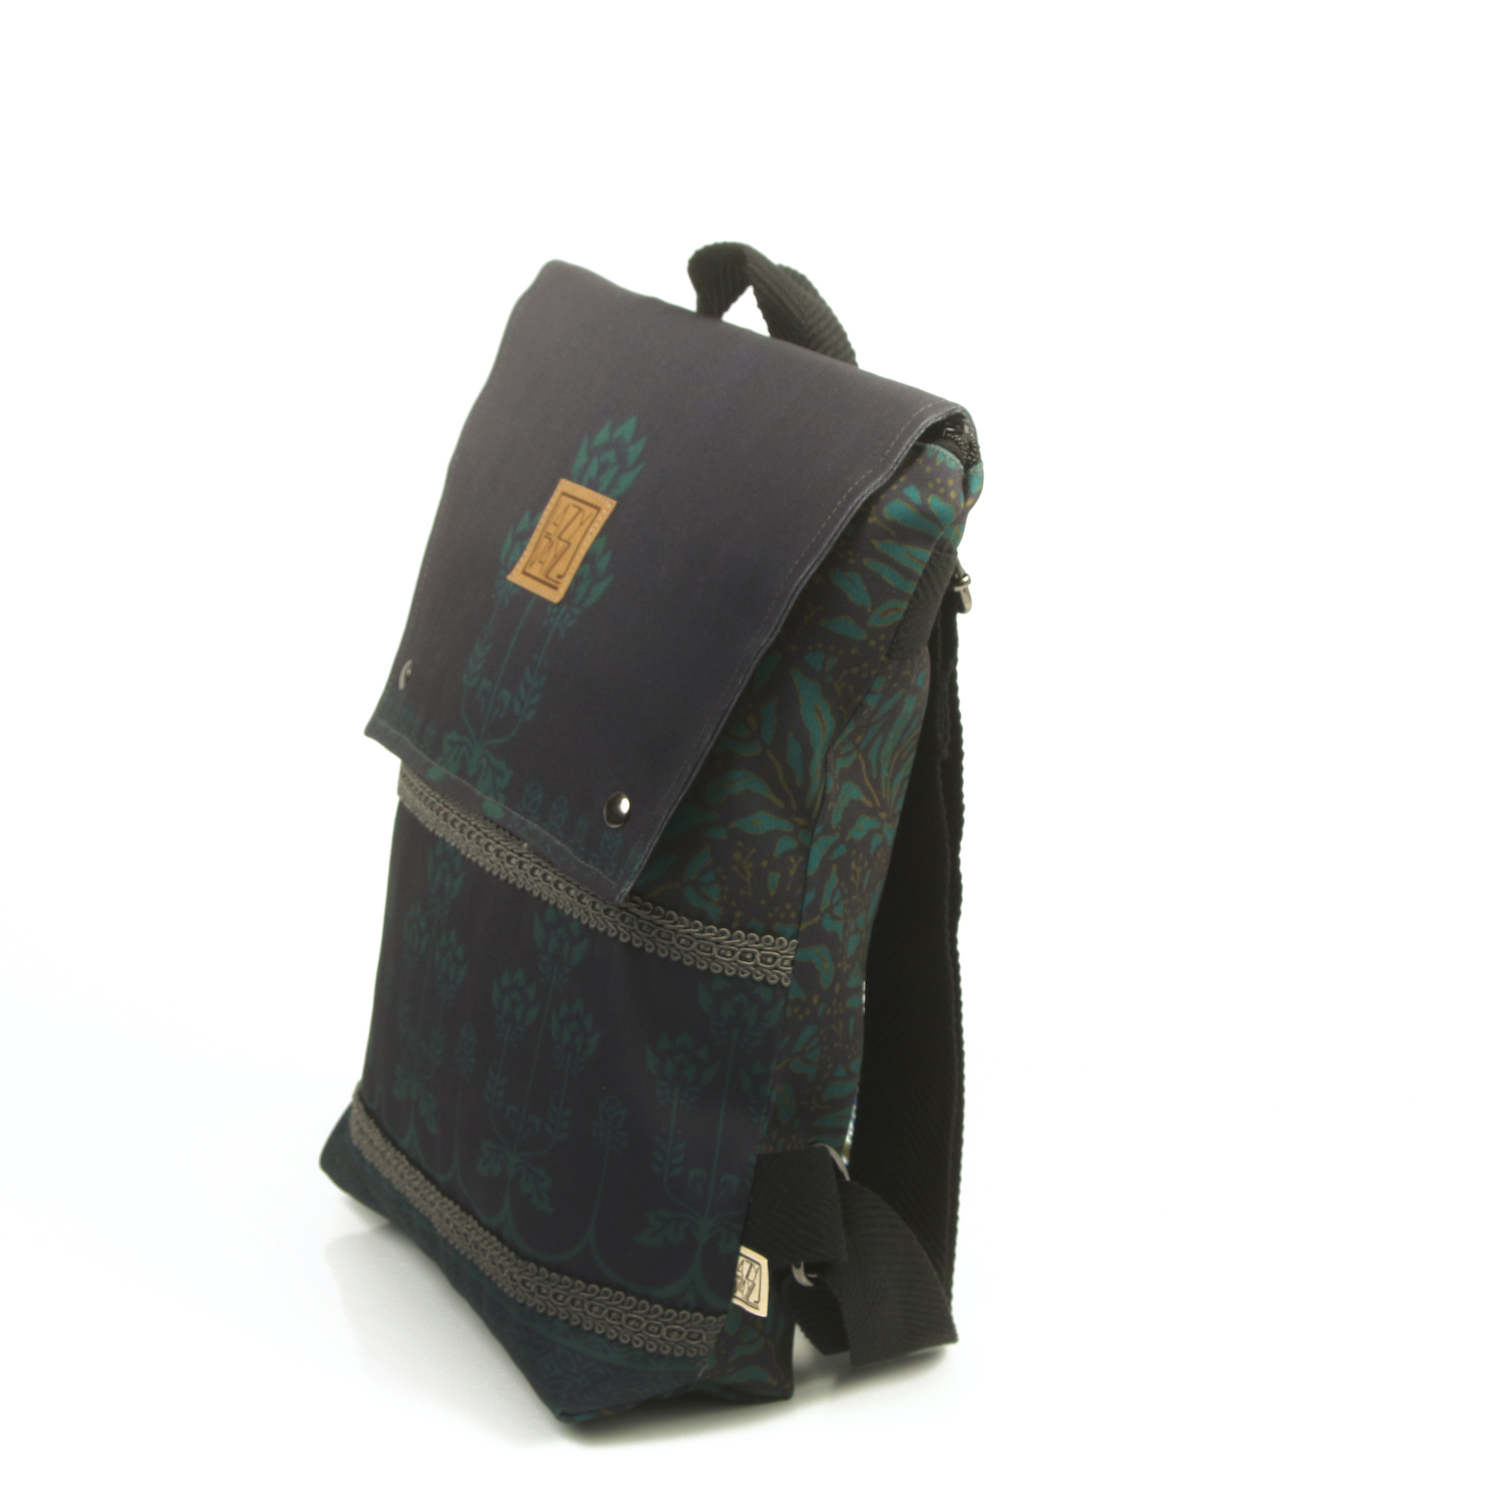 LazyDayz-Designs-Backpack-γυναικείος-σάκος-πλάτης-χειροποίητος bb0708b